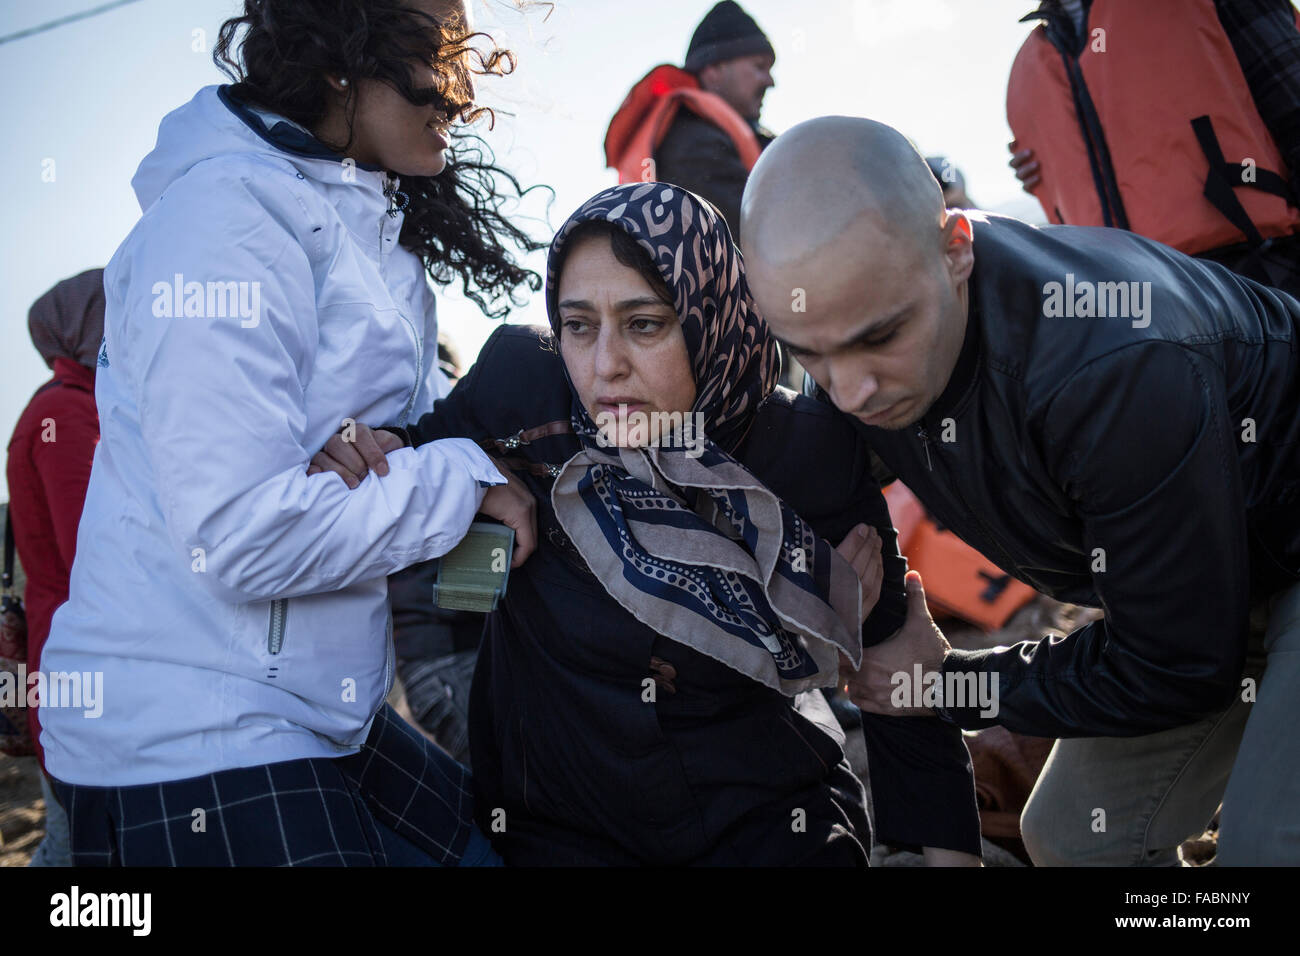 L'île de Lesvos, Grèce. Dec 26, 2015. Une femme afghane reçoit l'aide de bénévoles sur un rivage quelques minutes après son arrivée avec d'autres réfugiés et migrants dans un canot en caoutchouc voile venant de la côte turque à Skala Sikamineas sur l'île de Lesvos, Grèce, 26 décembre 2015. Photo : Baltagiannis Socrates/dpa/Alamy Live News Banque D'Images